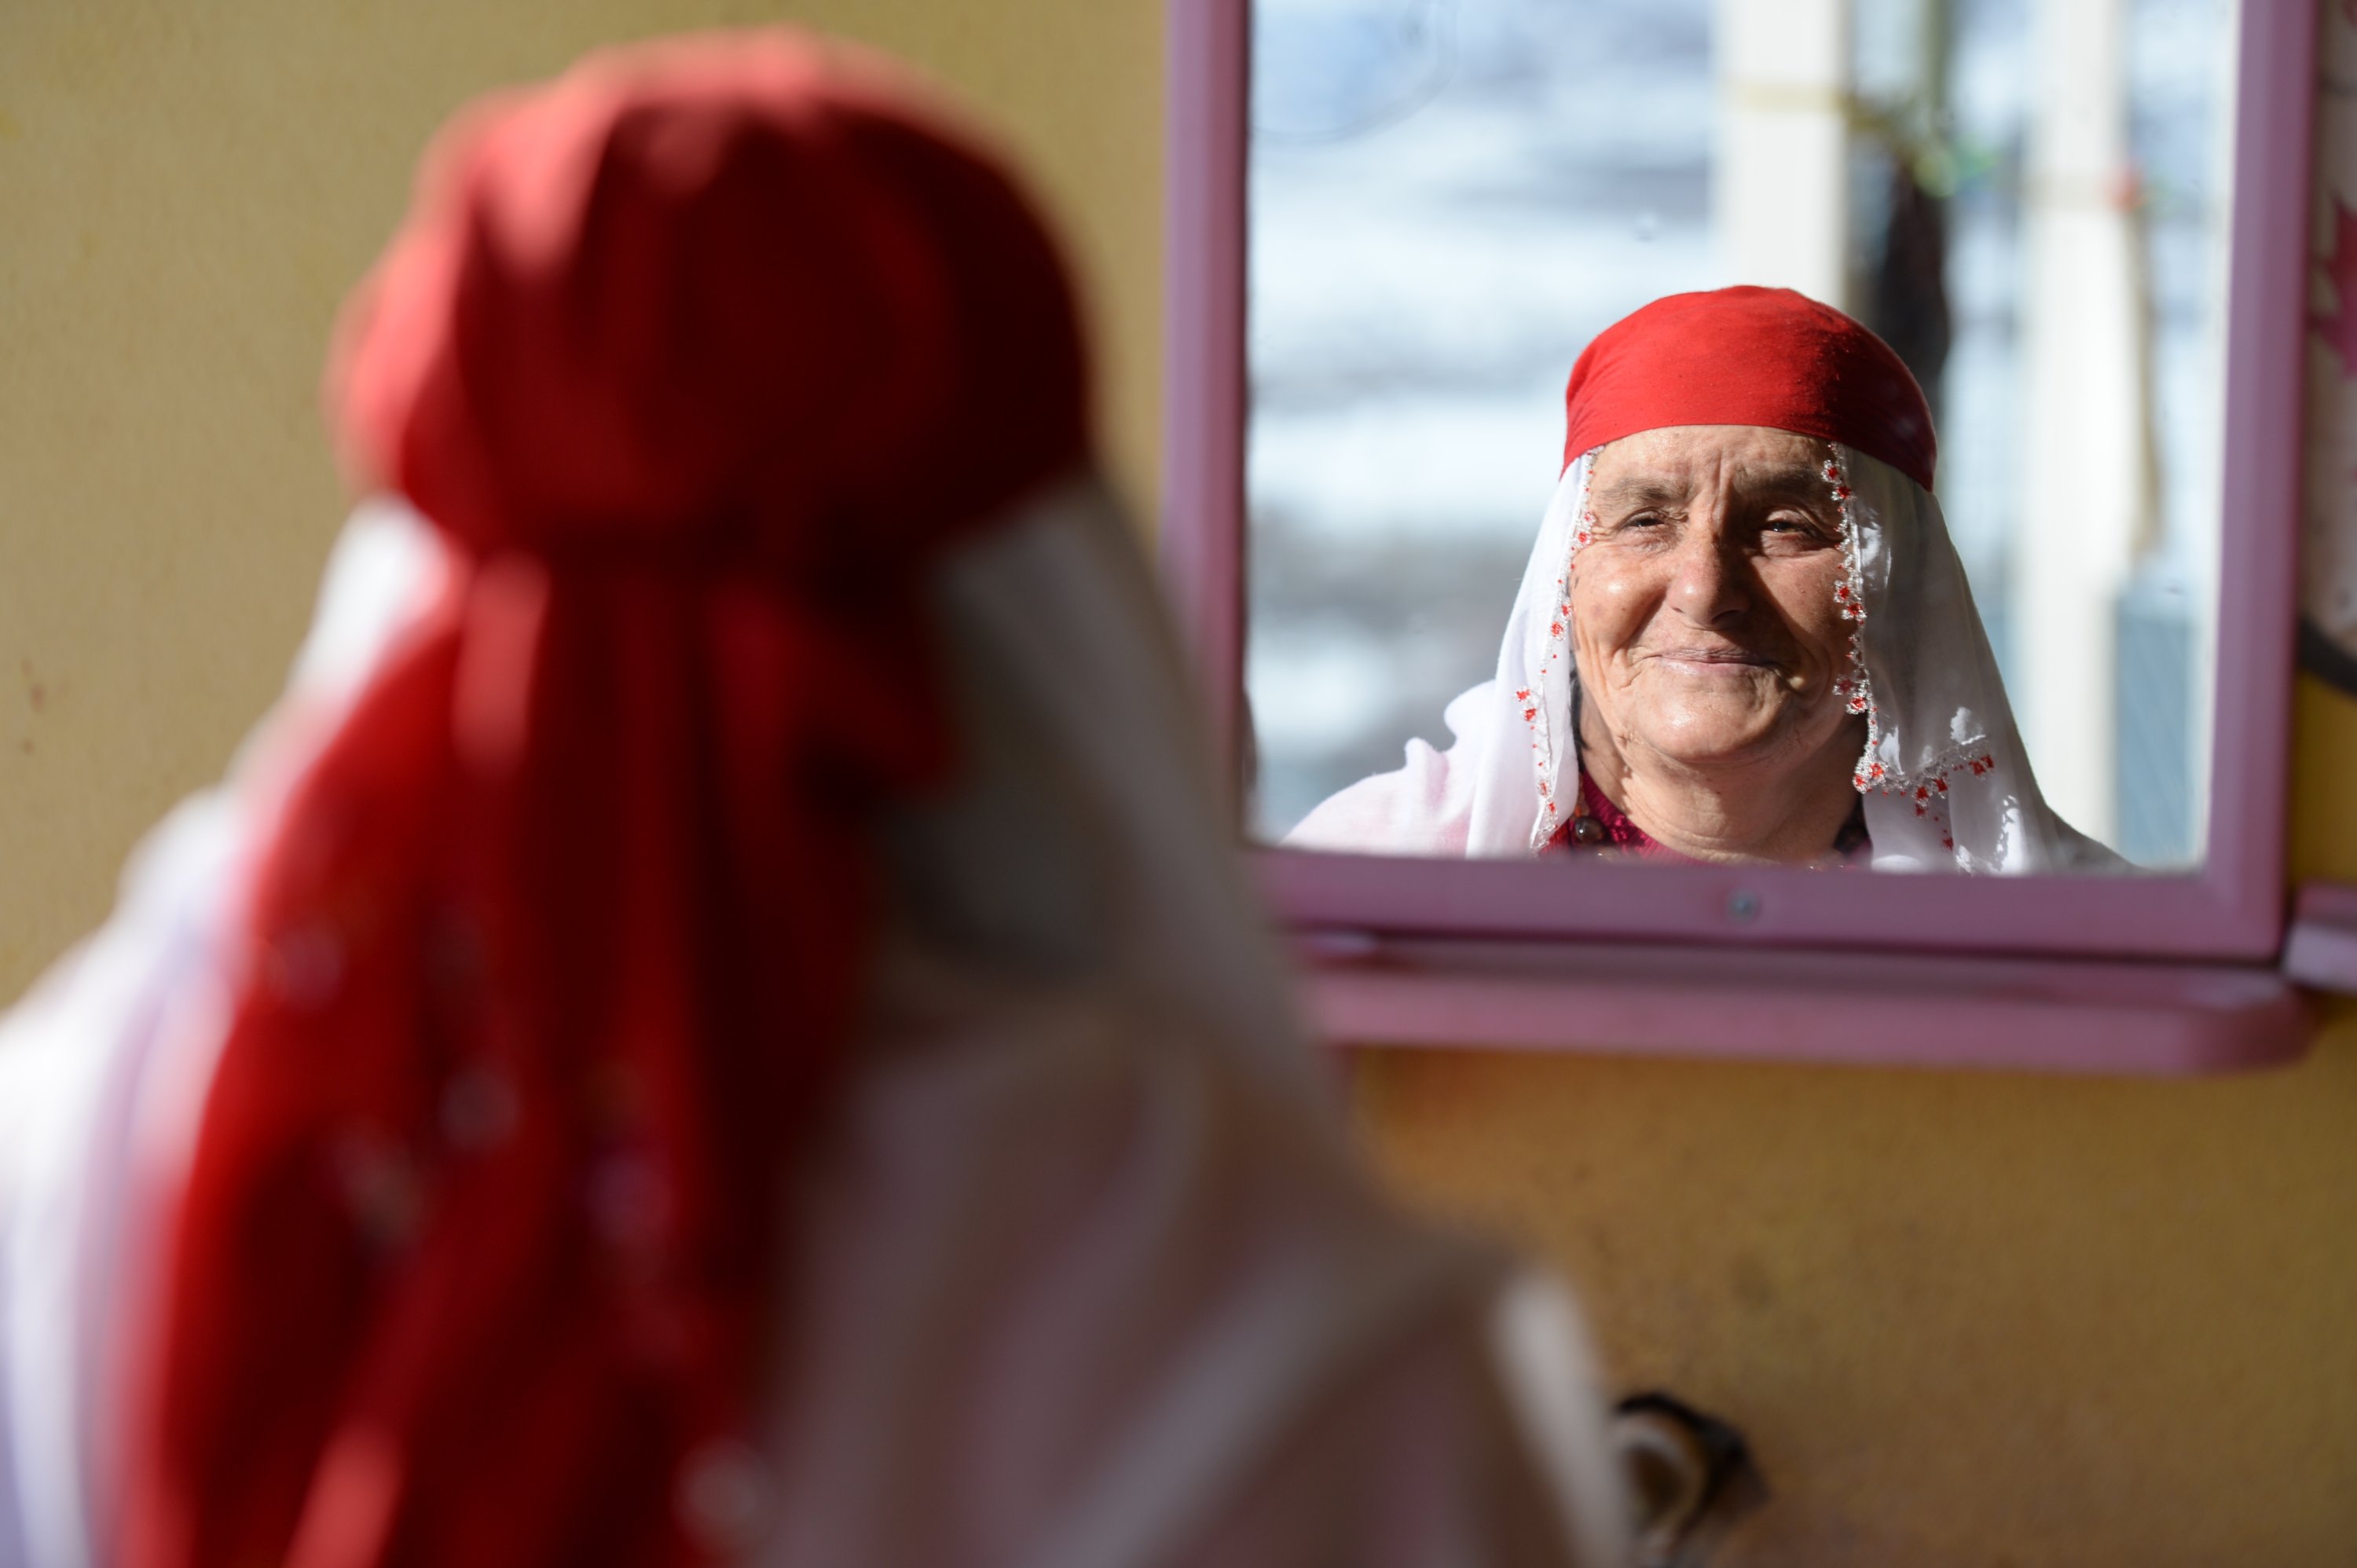 Wanita berbaju merah, Nafiye Caz, melihat ke cermin, Bingöl, Turki, 10 Januari 2022. (AA Photo)